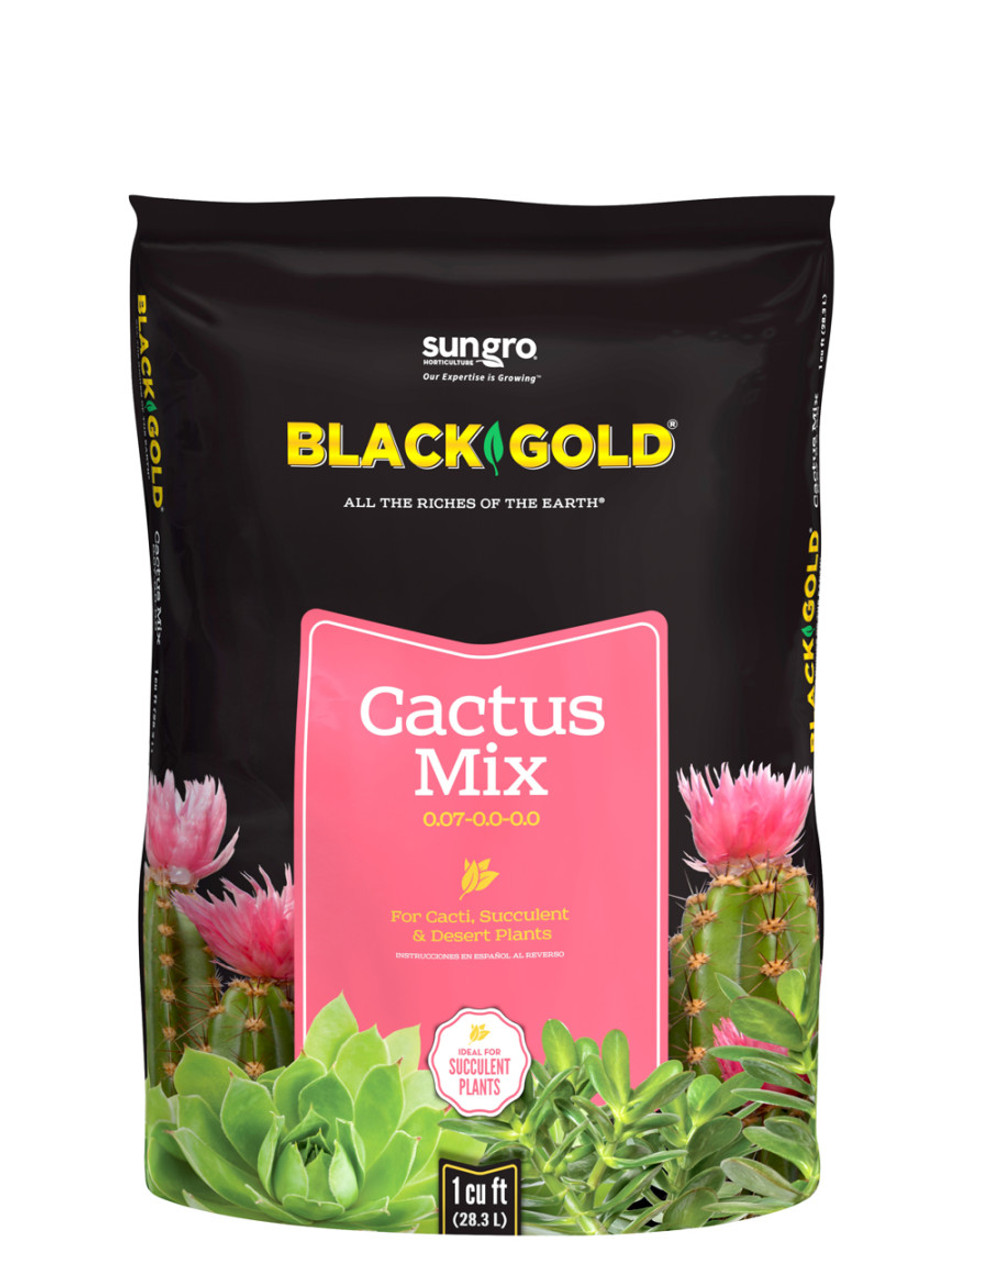 BG Cactus Mix 1 cf 100057582